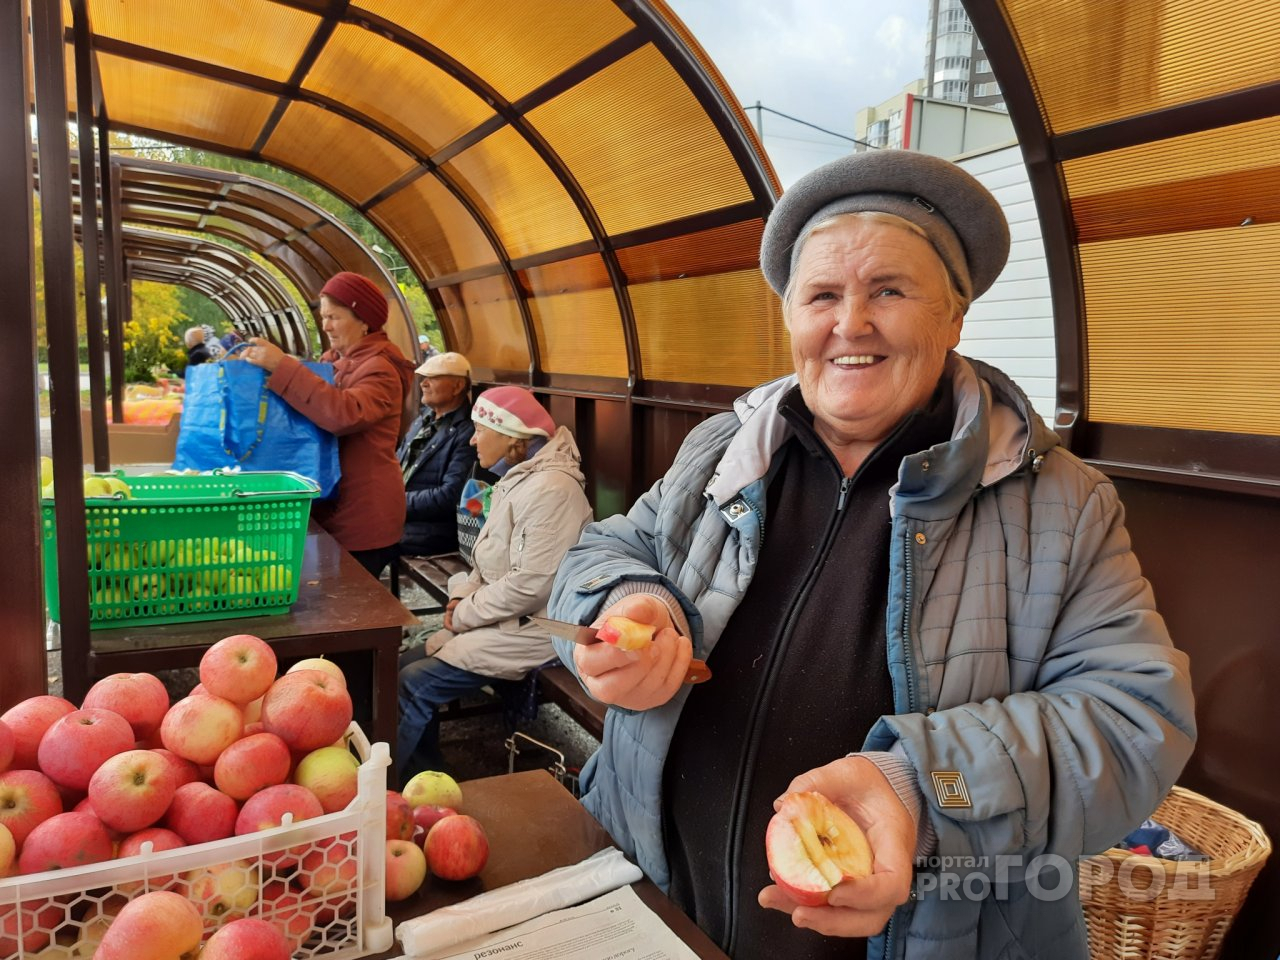 Новочебоксарские пенсионеры рассказали, сколько зарабатывают на продаже овощей и фруктов: "Будешь дома сидеть - ноги протянешь"